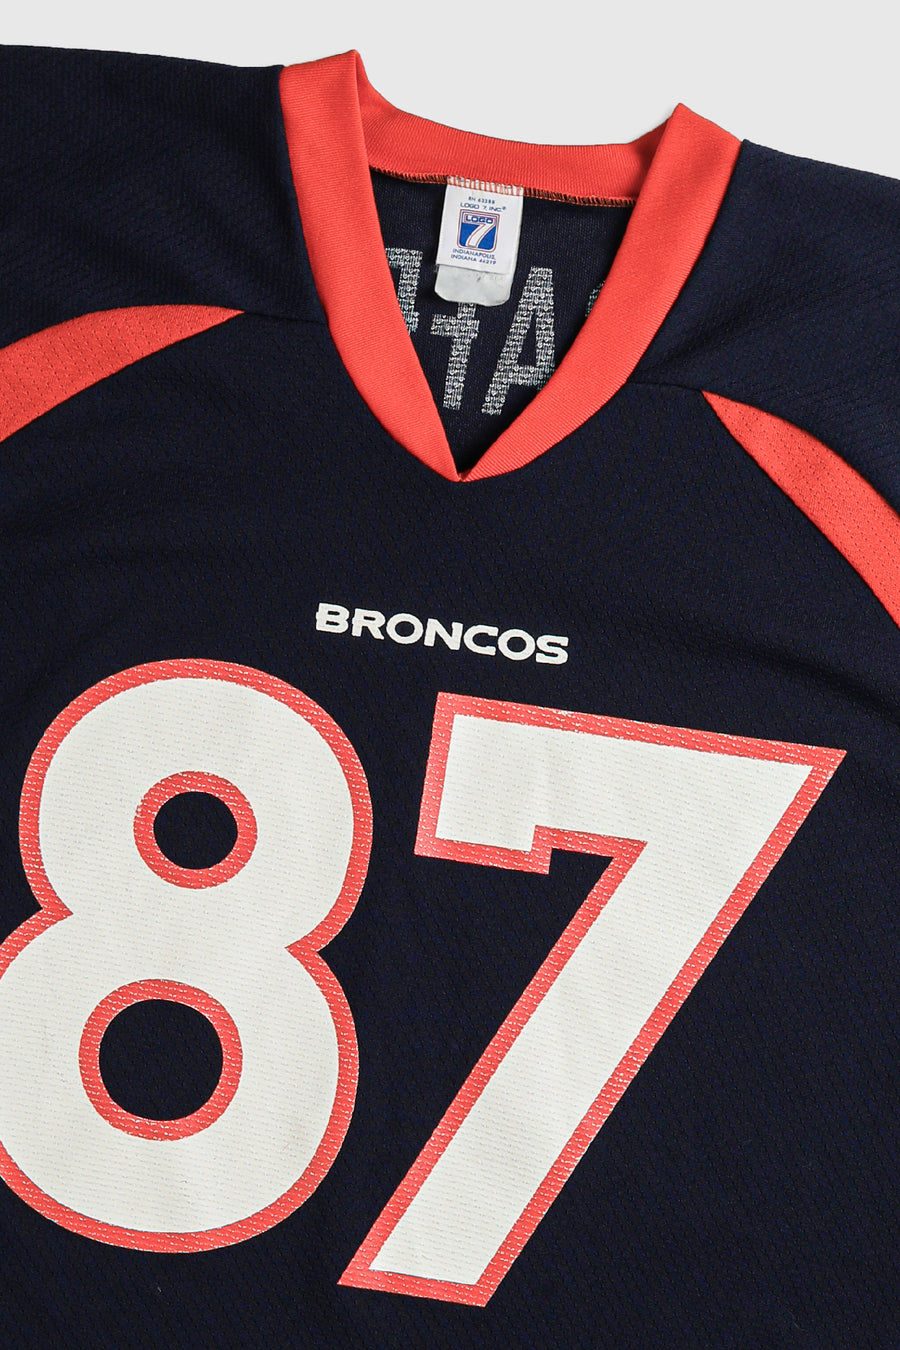 Vintage Broncos NFL Jersey - XL